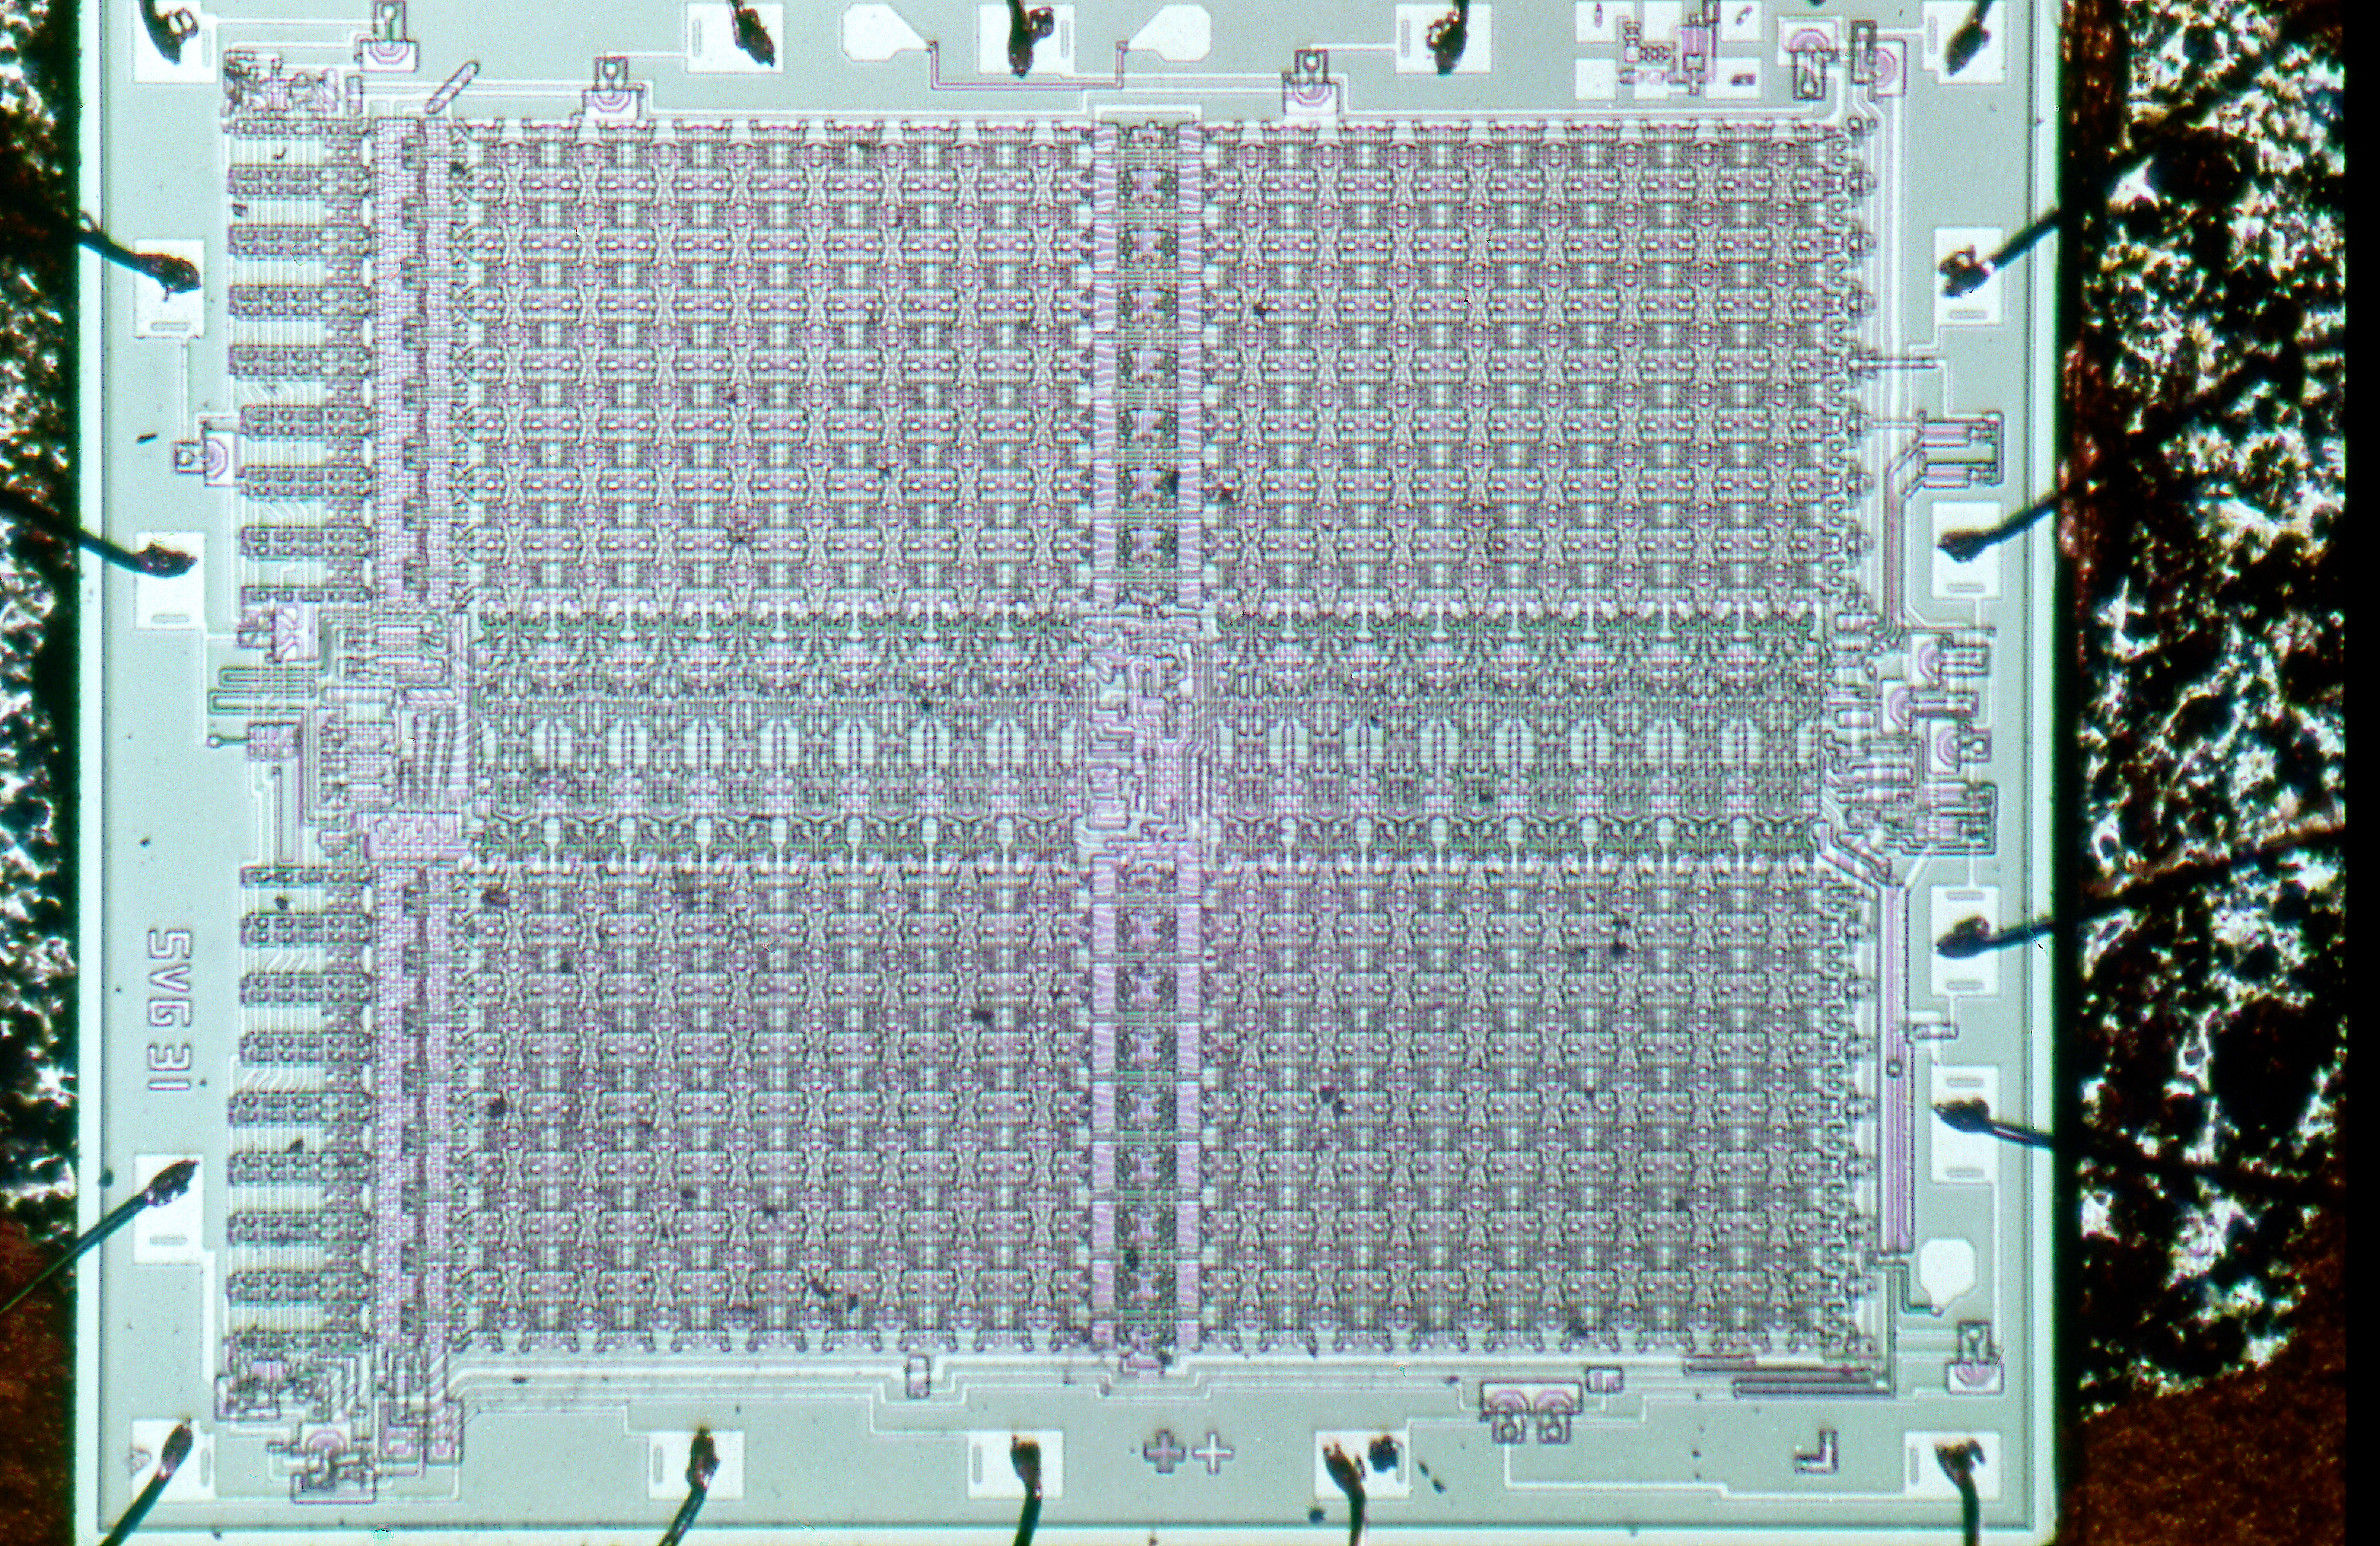 Speicherbaustein mit 1024 bit p-MOS-Siliziumgate-Technik unserer neuen Computer<br/>Originalgre 3,5x2,9mm